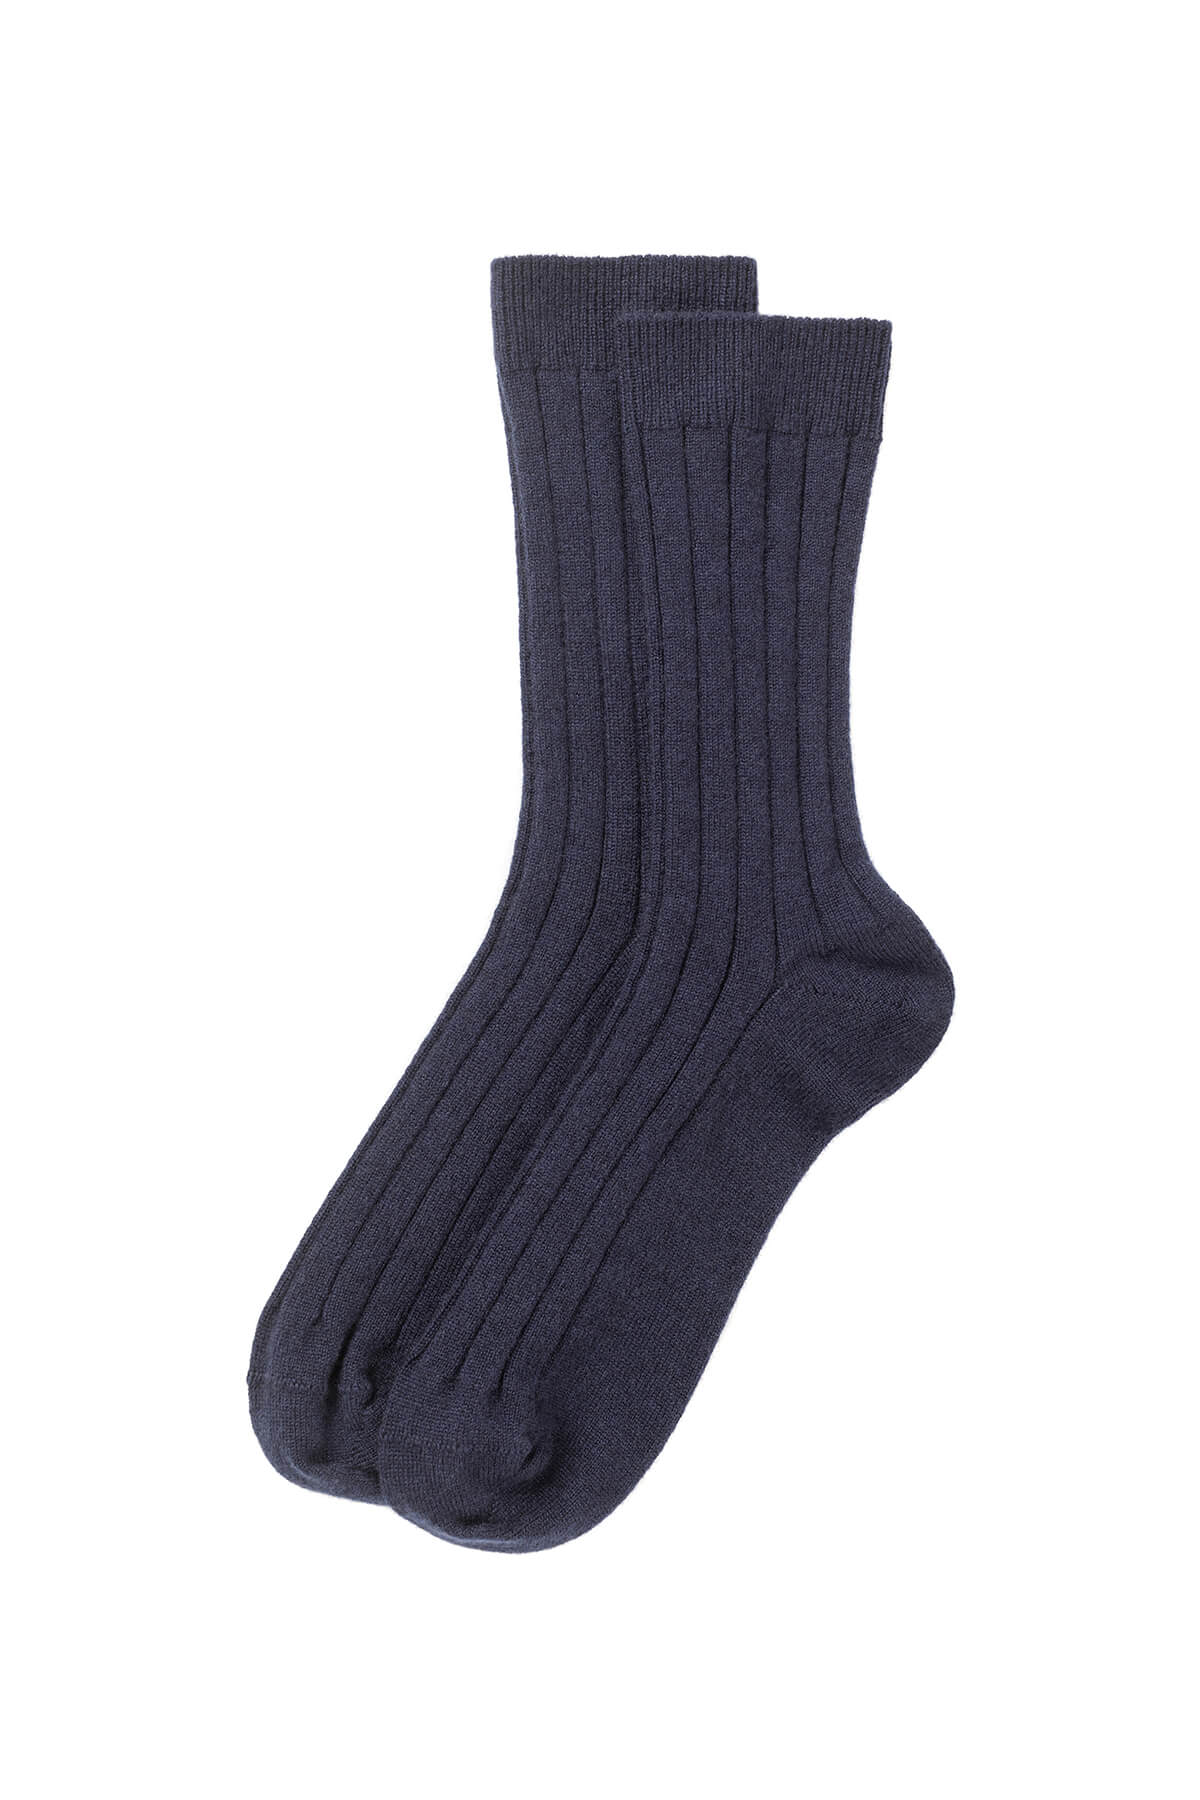 Johnstons of Elgin's Navy Men's Cashmere Ribbed Socks 365GIFTSET2E